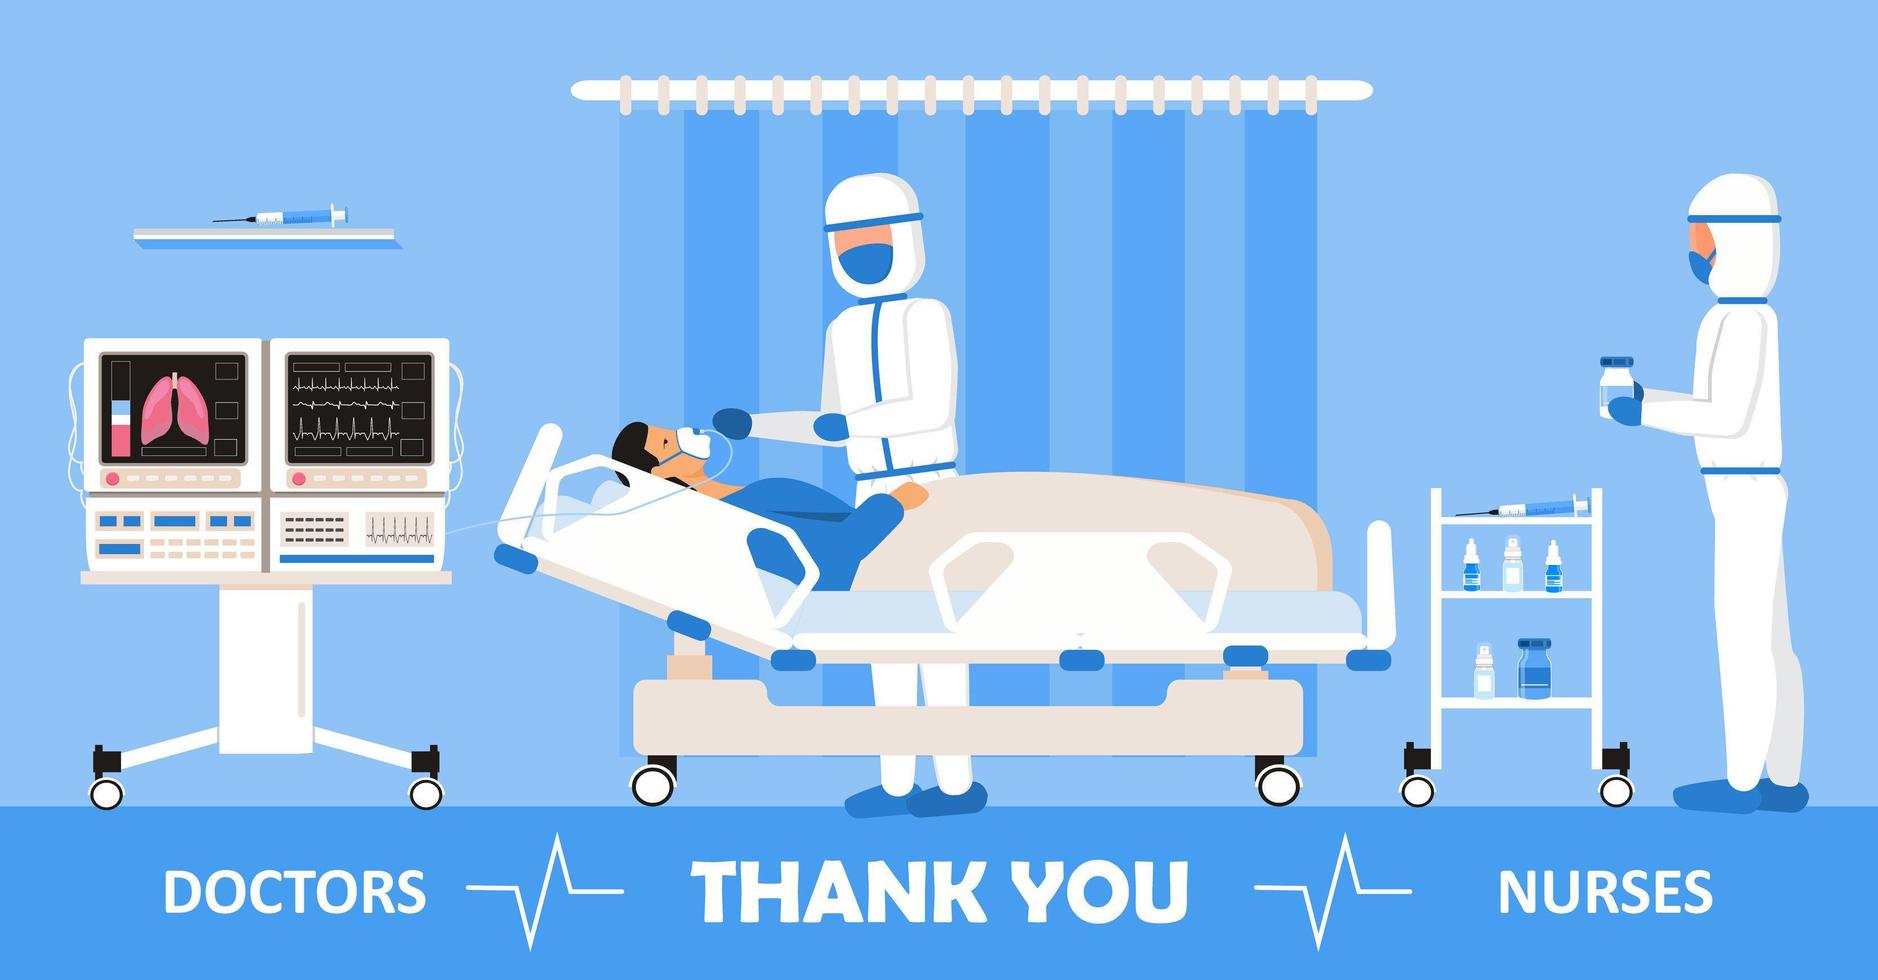 bedankt artsen en verpleegkundigen die in de ziekenhuizen werken. intensive care unit kliniek met lucht zuurstofsensor wordt weergegeven op de achtergrond. dankzij artsen voor de bestrijding van het coronavirus. vector